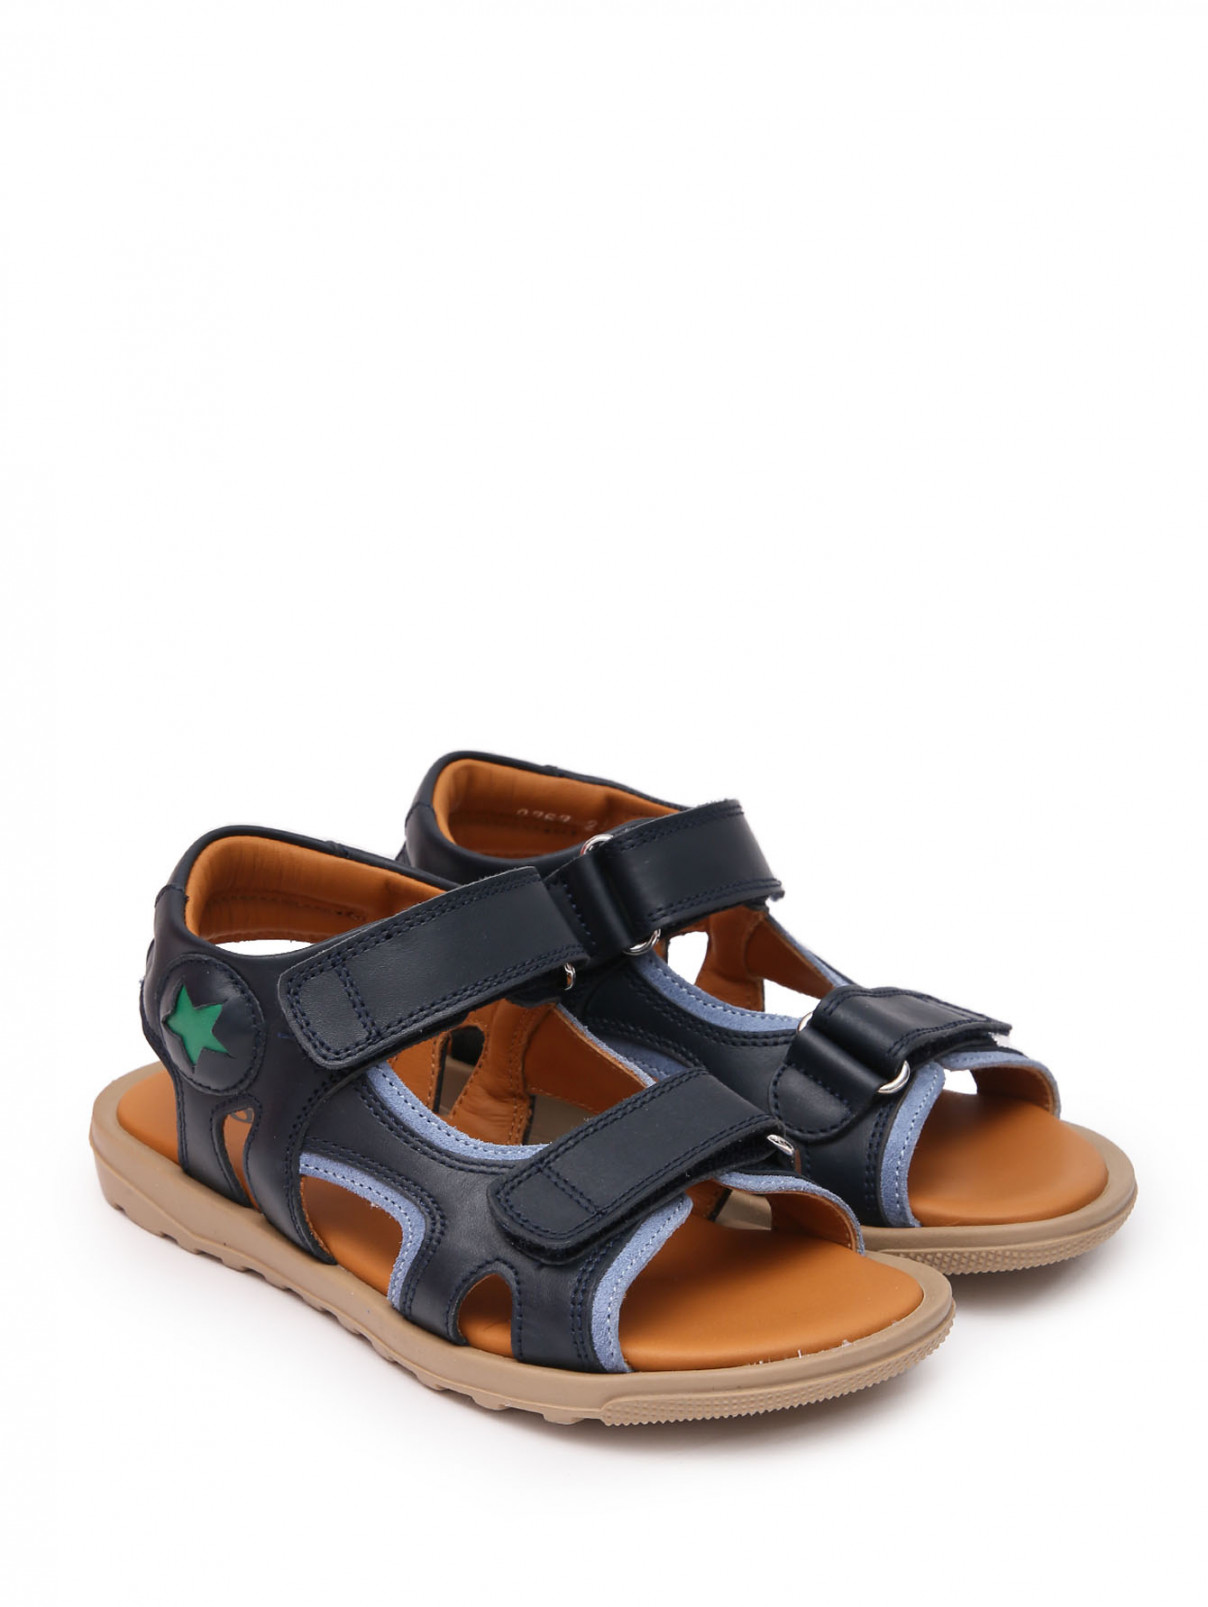 Кожаные сандалии с липучками Rondinella  –  Общий вид  – Цвет:  Синий